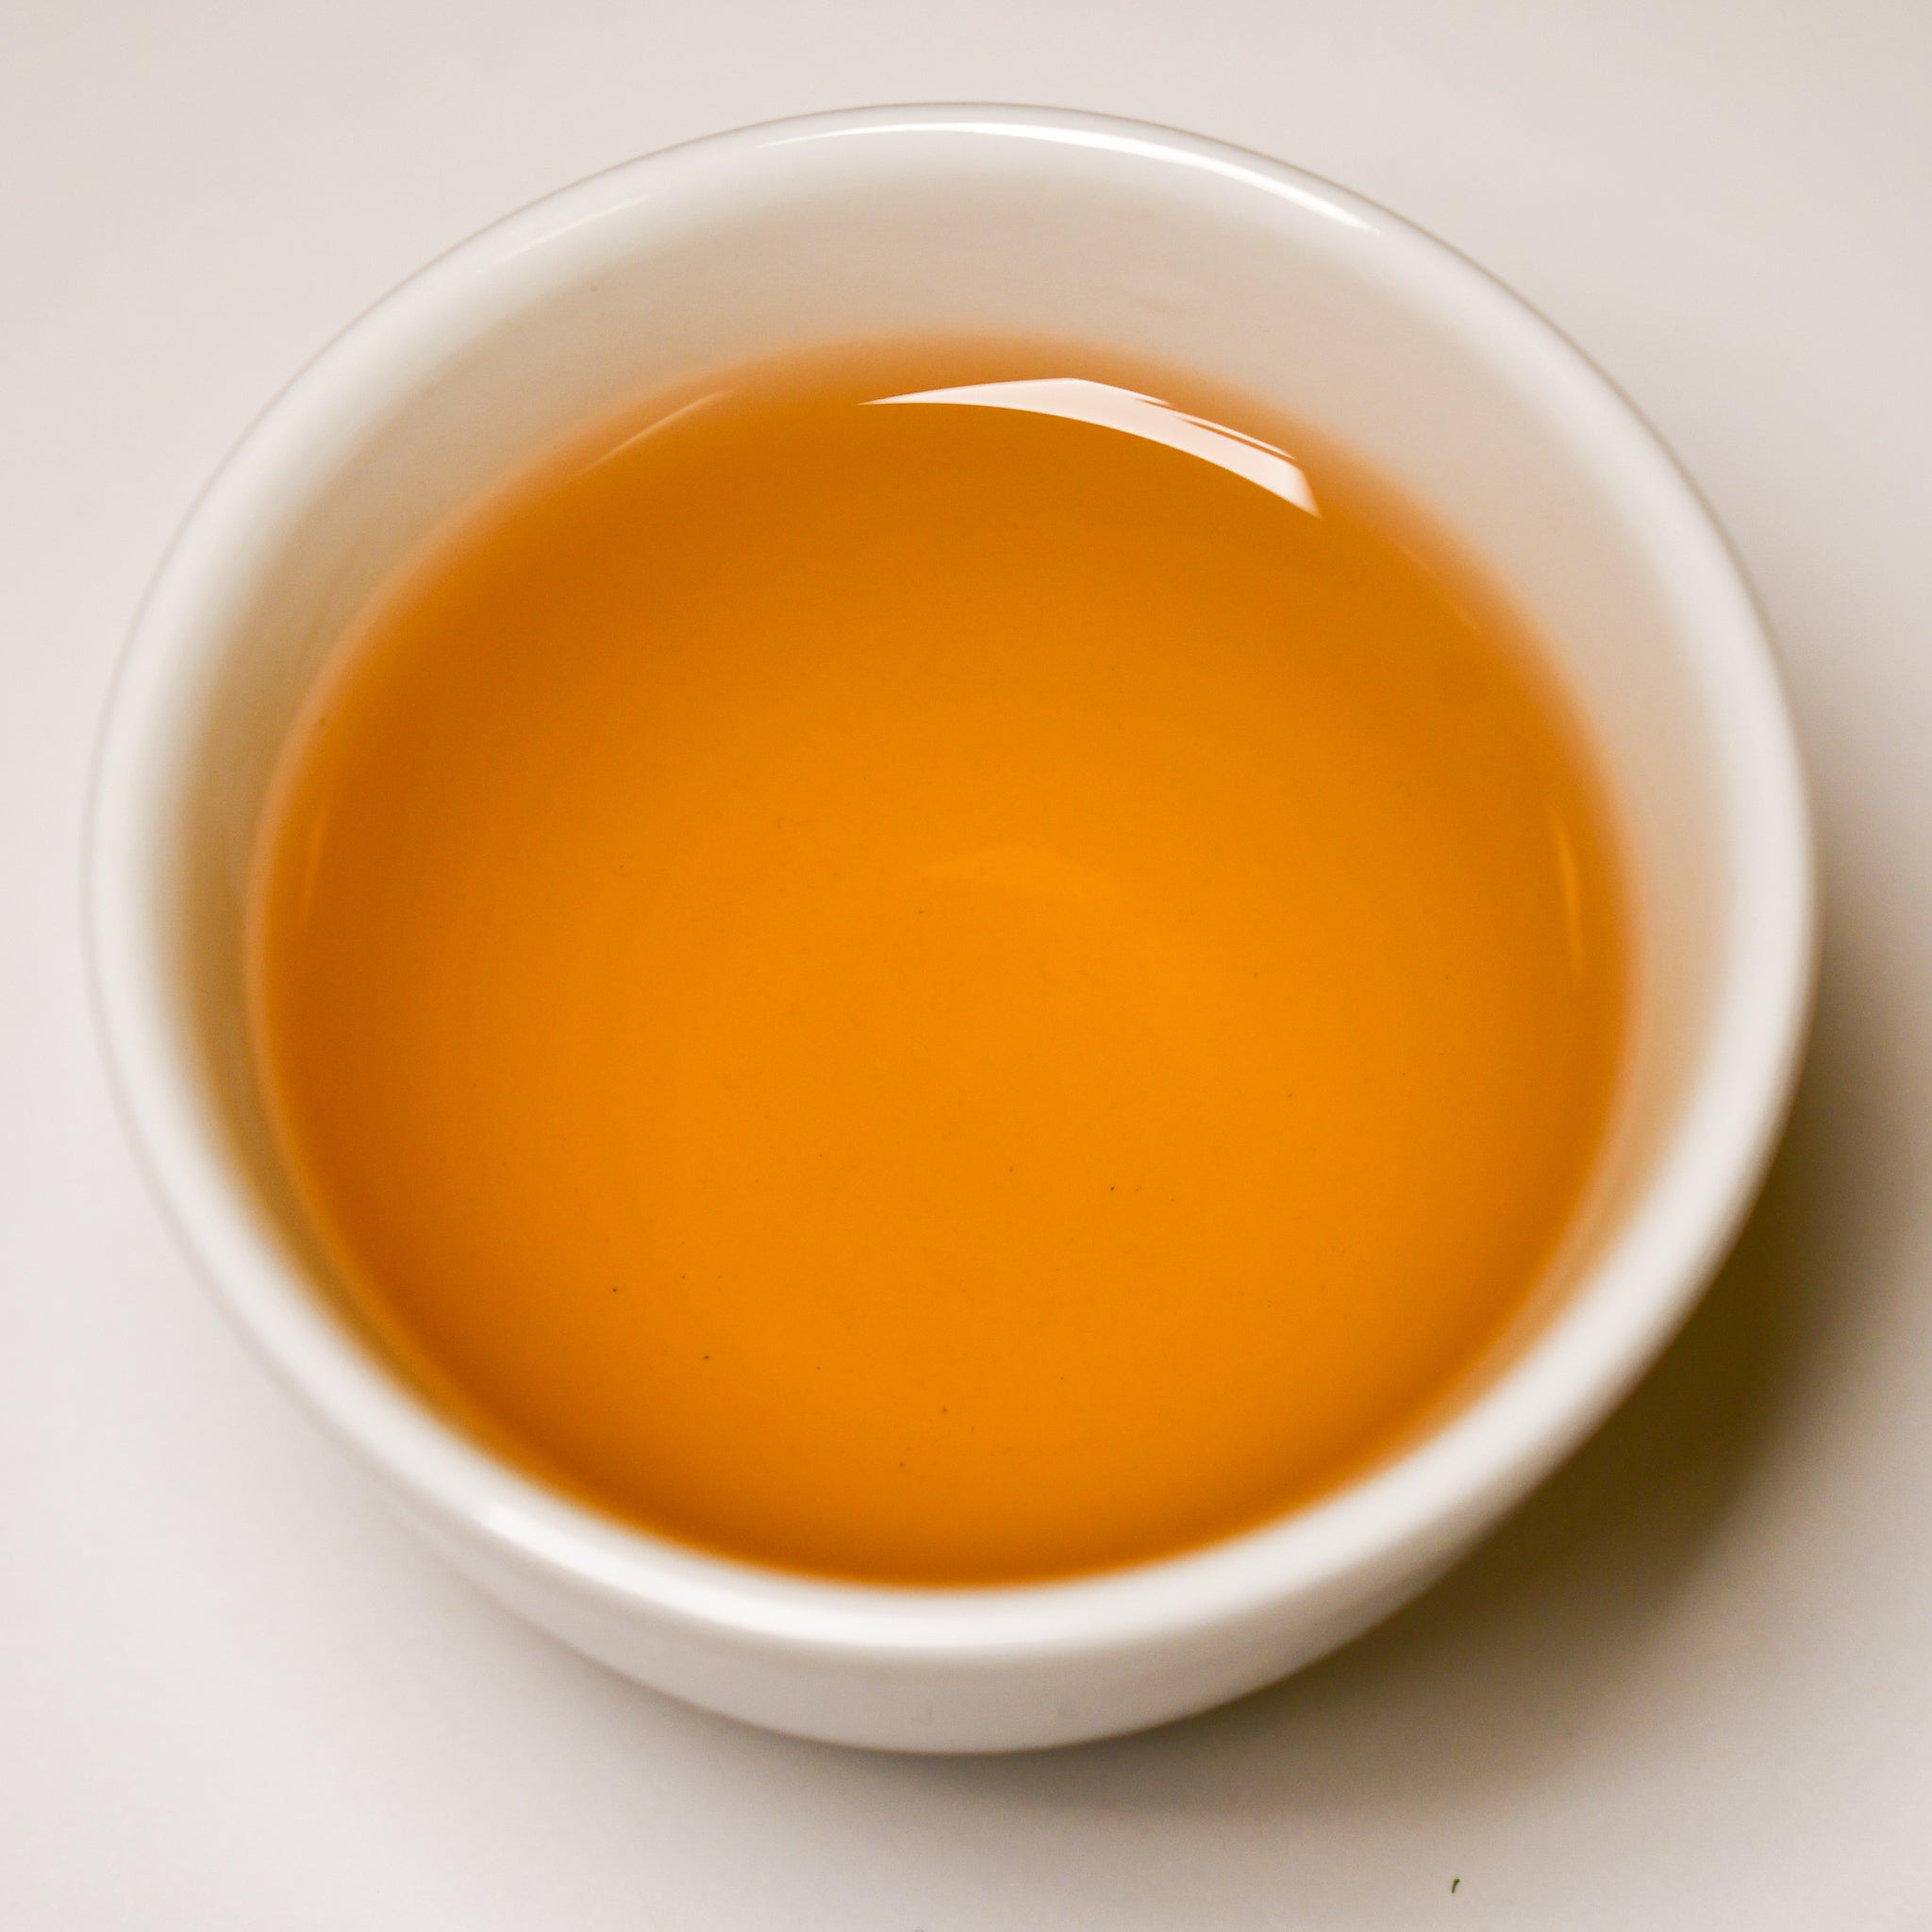 China "Bi Luo Chun" Green Tea